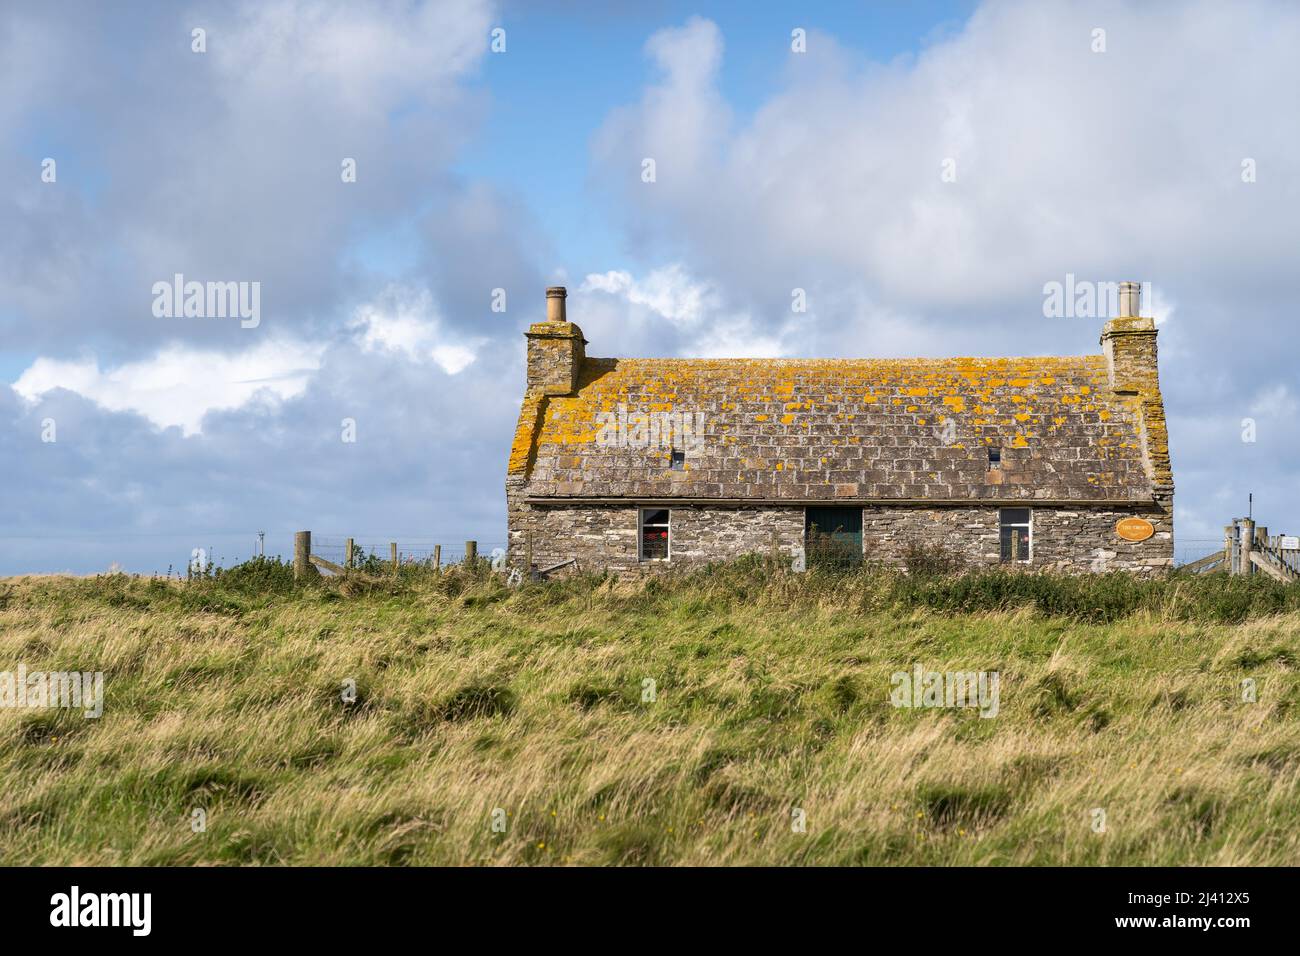 Una vecchia casa croft in pietra con un tetto coperto di lichen sull'isola di Sanday, parte delle isole Orkney in Scozia. Foto Stock